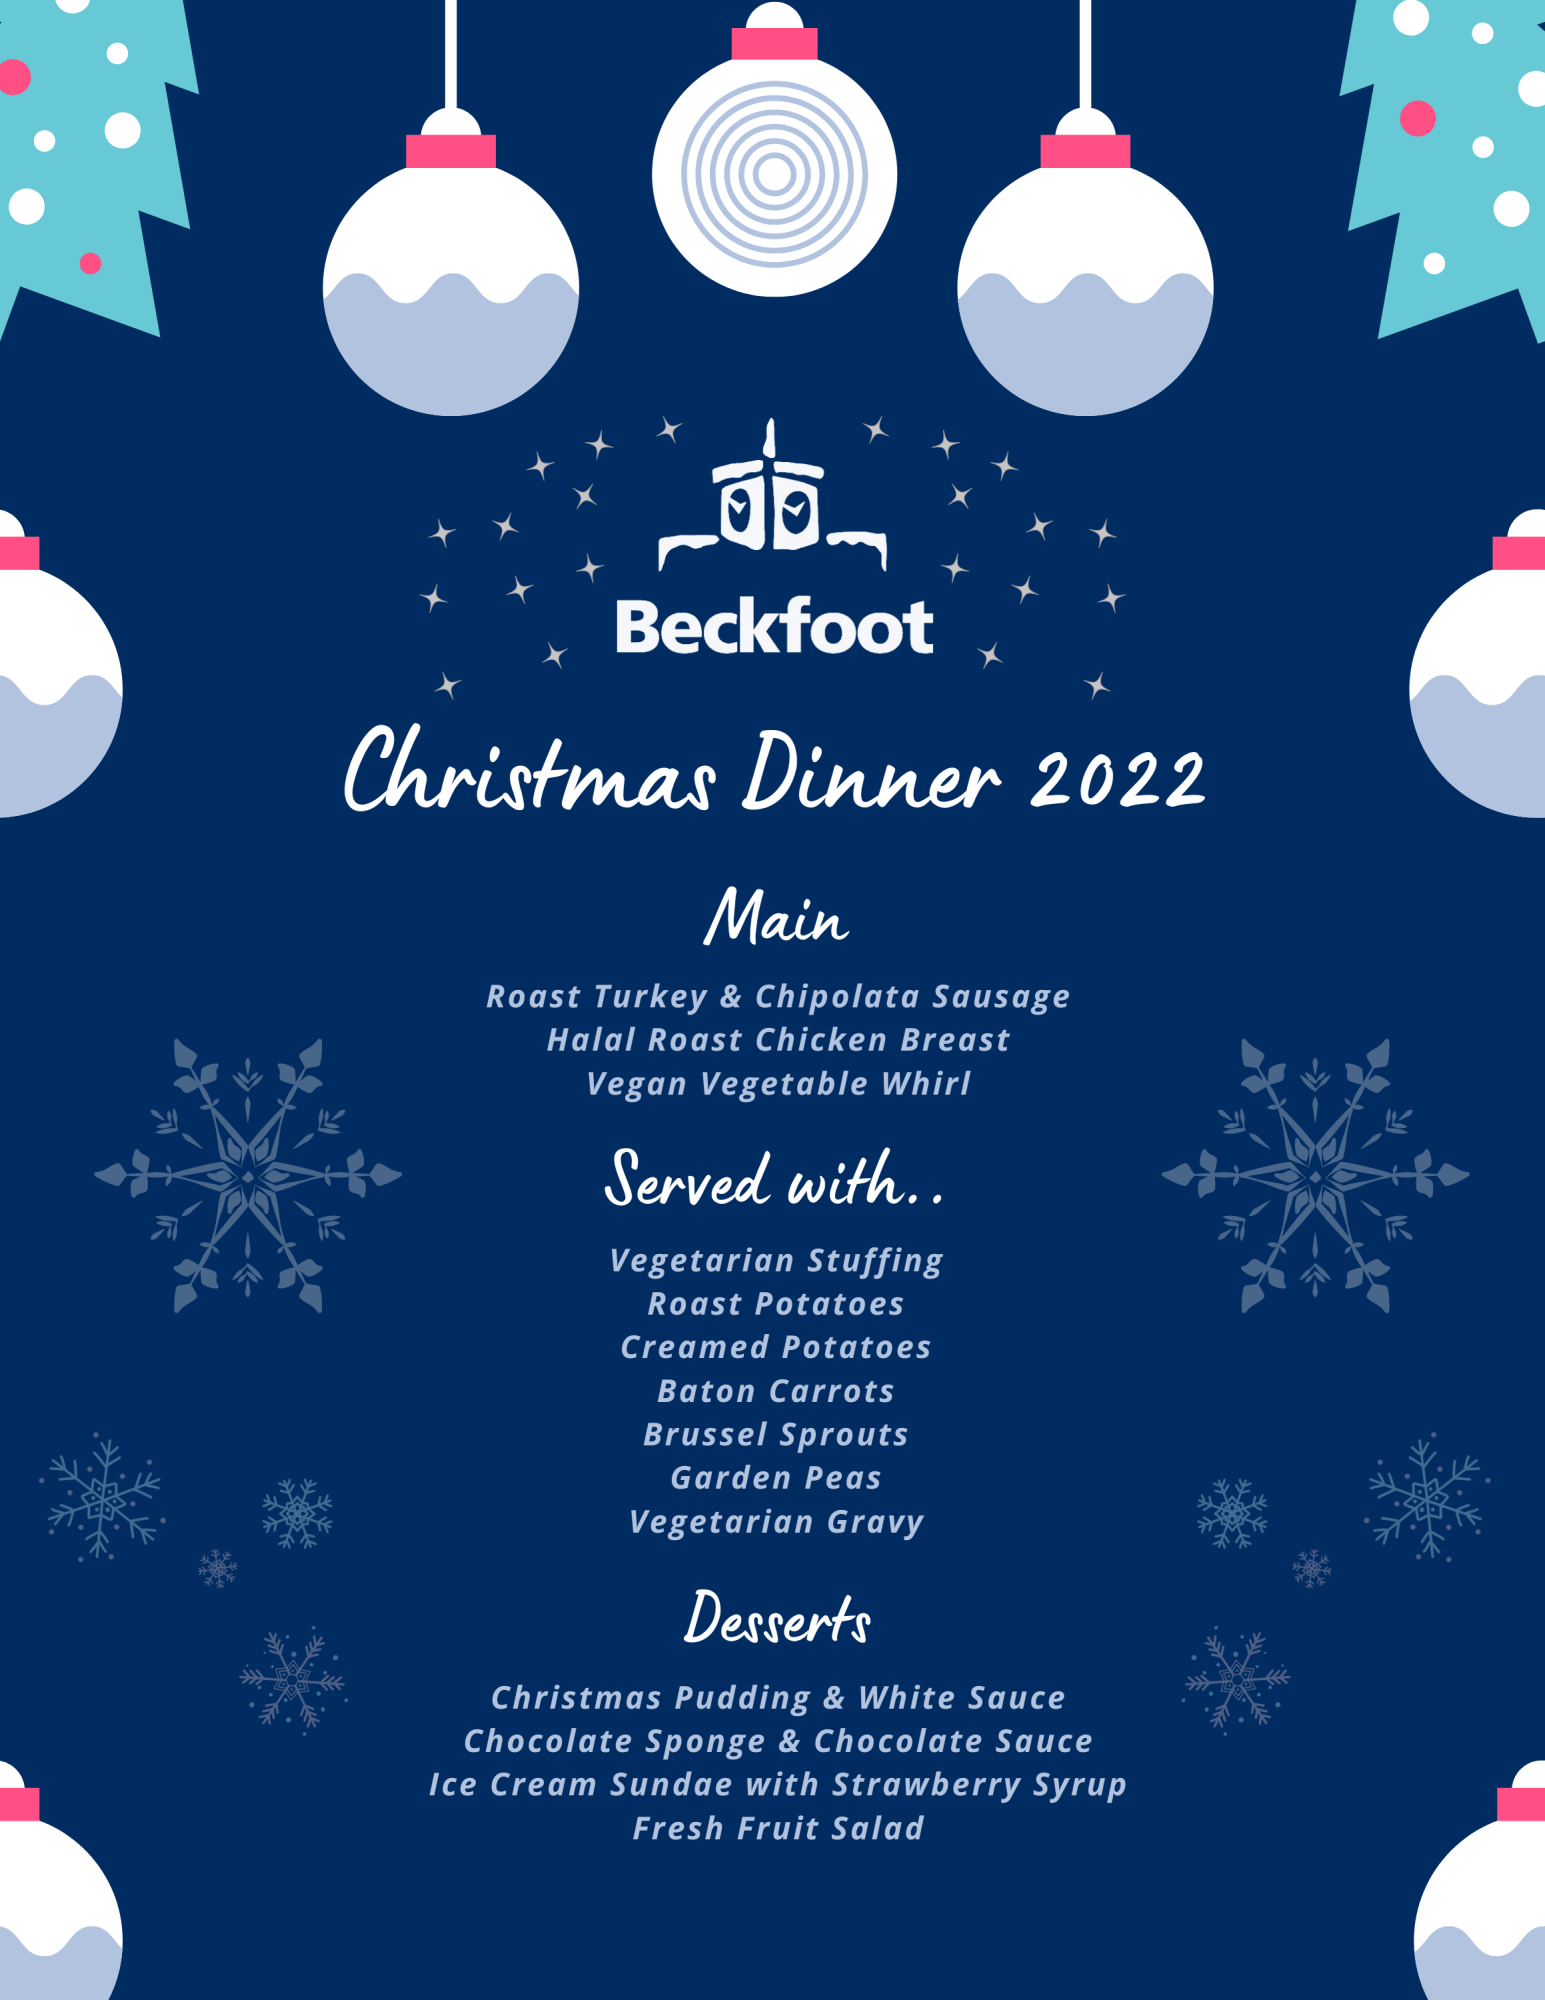 Christmas Dinner Menu 2022